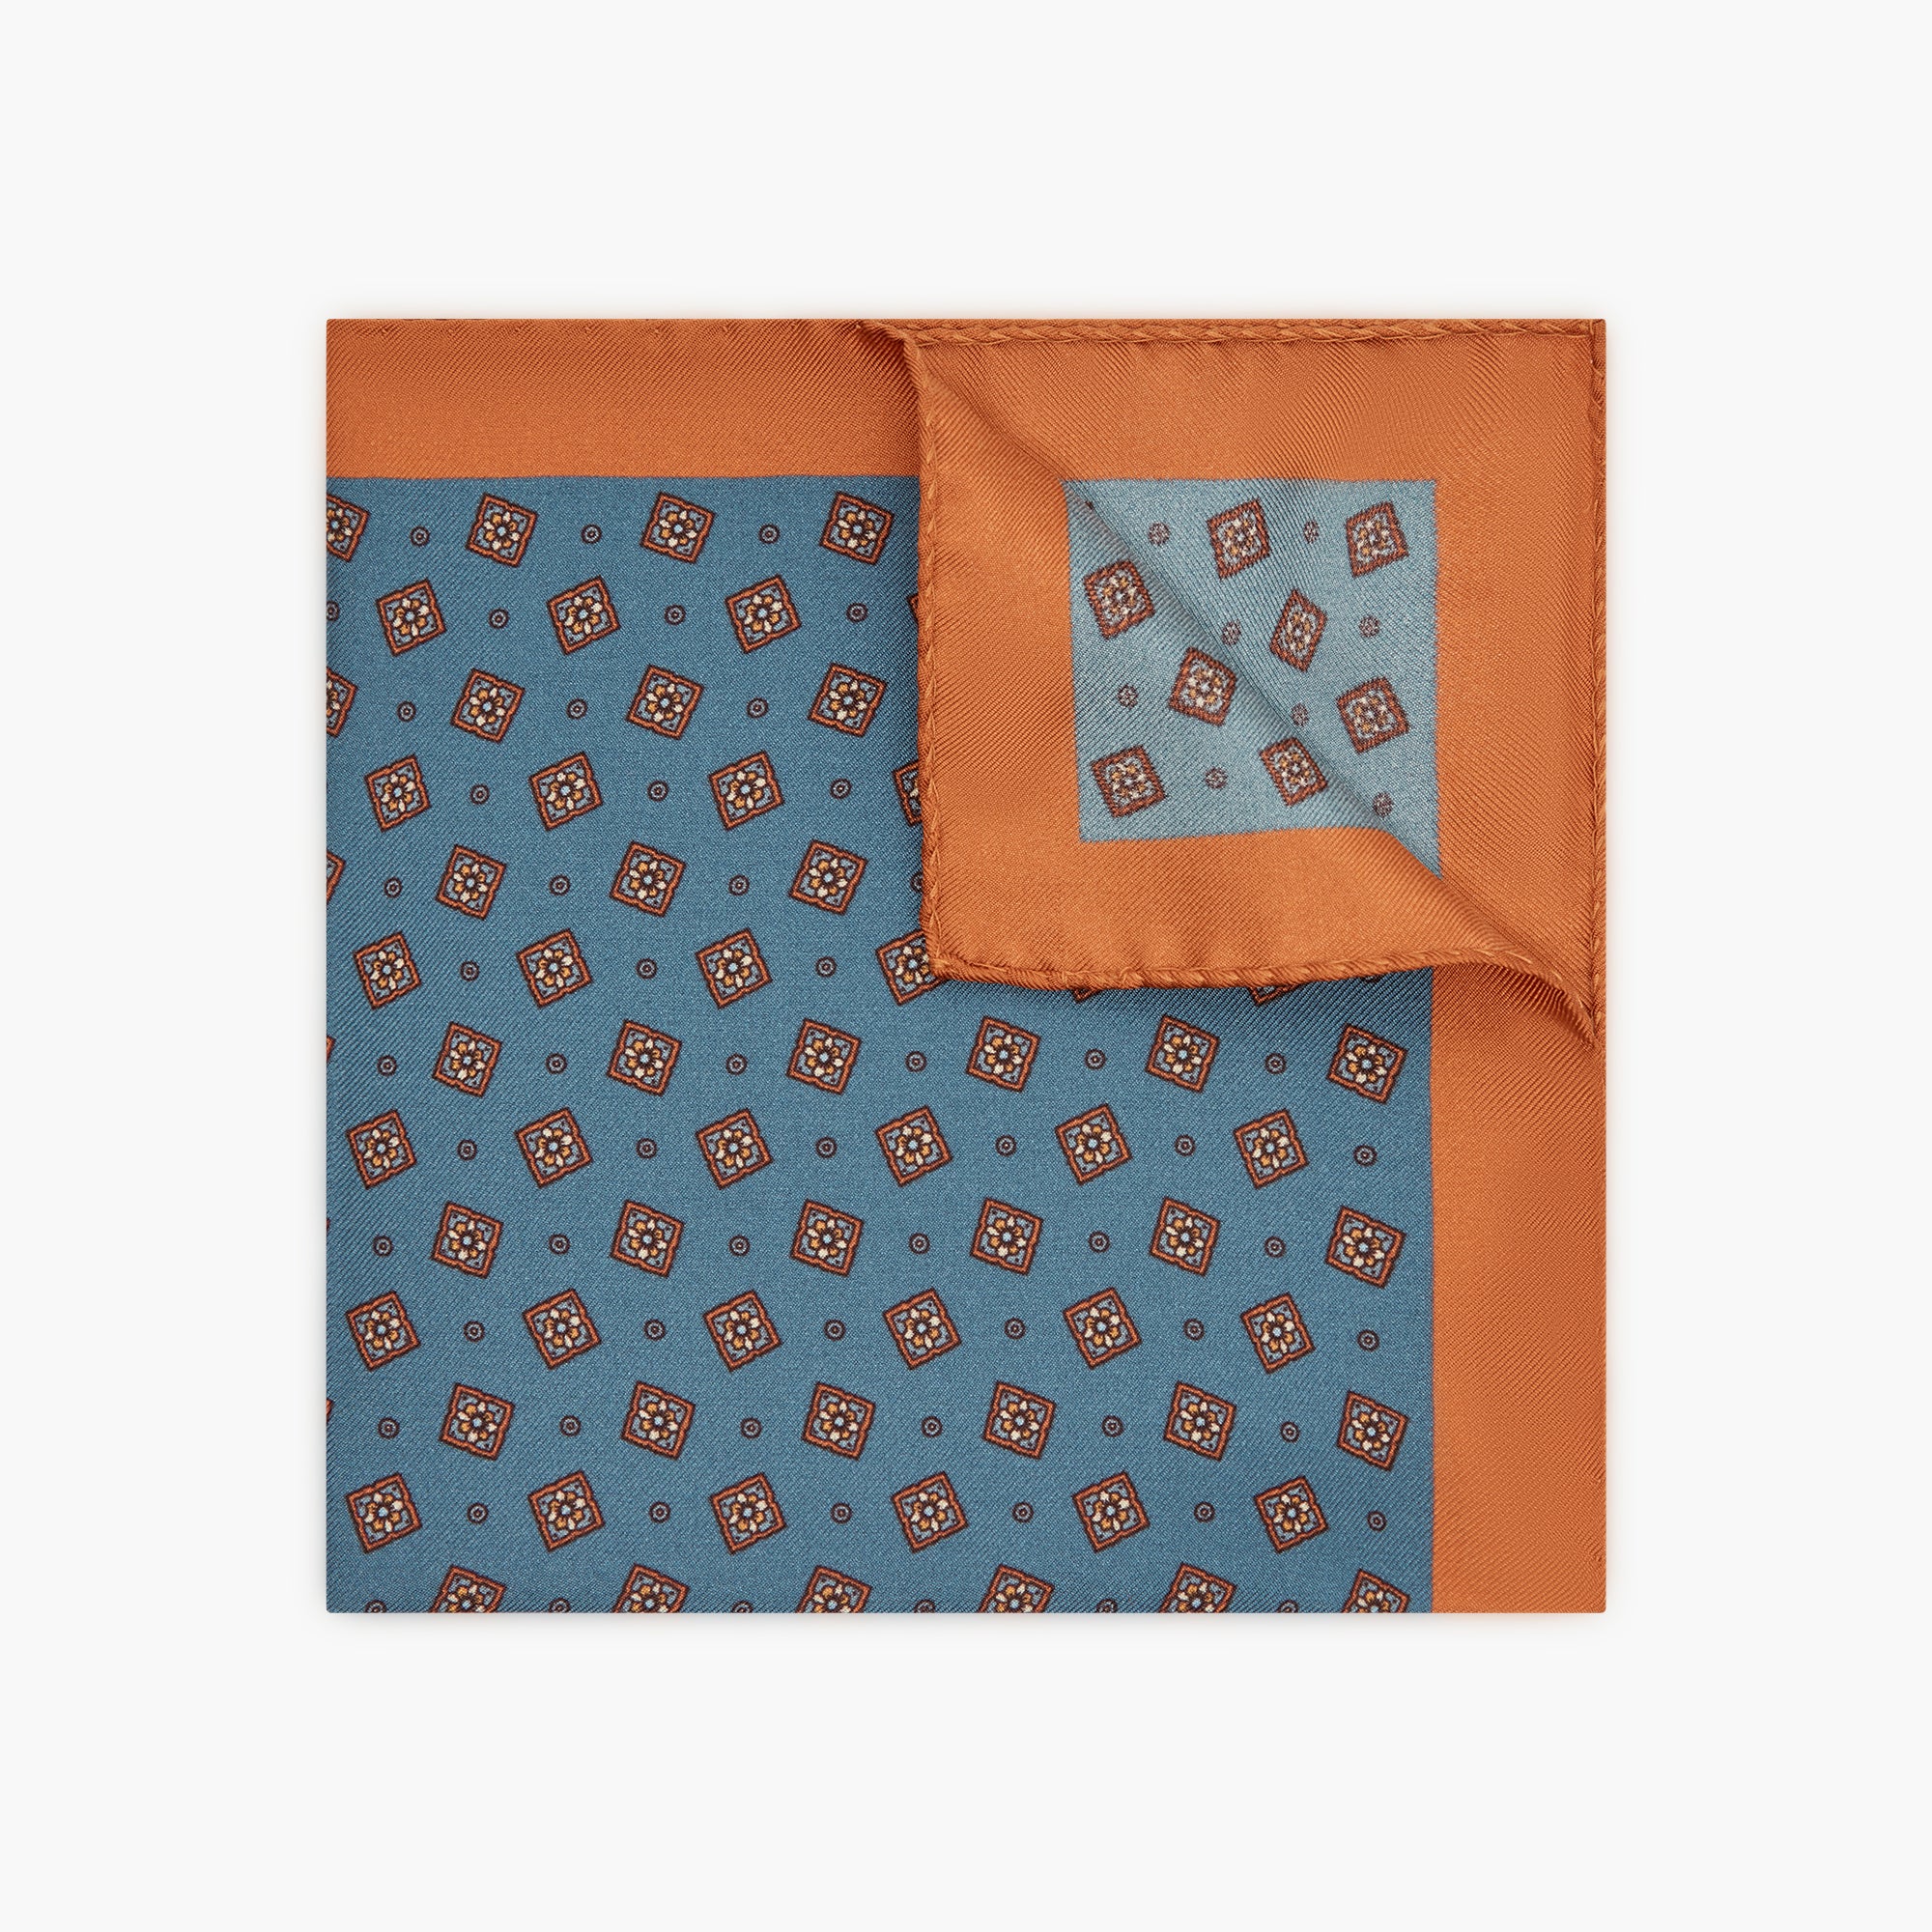 Floral Printed Silk Pocket Square - Blue Orange